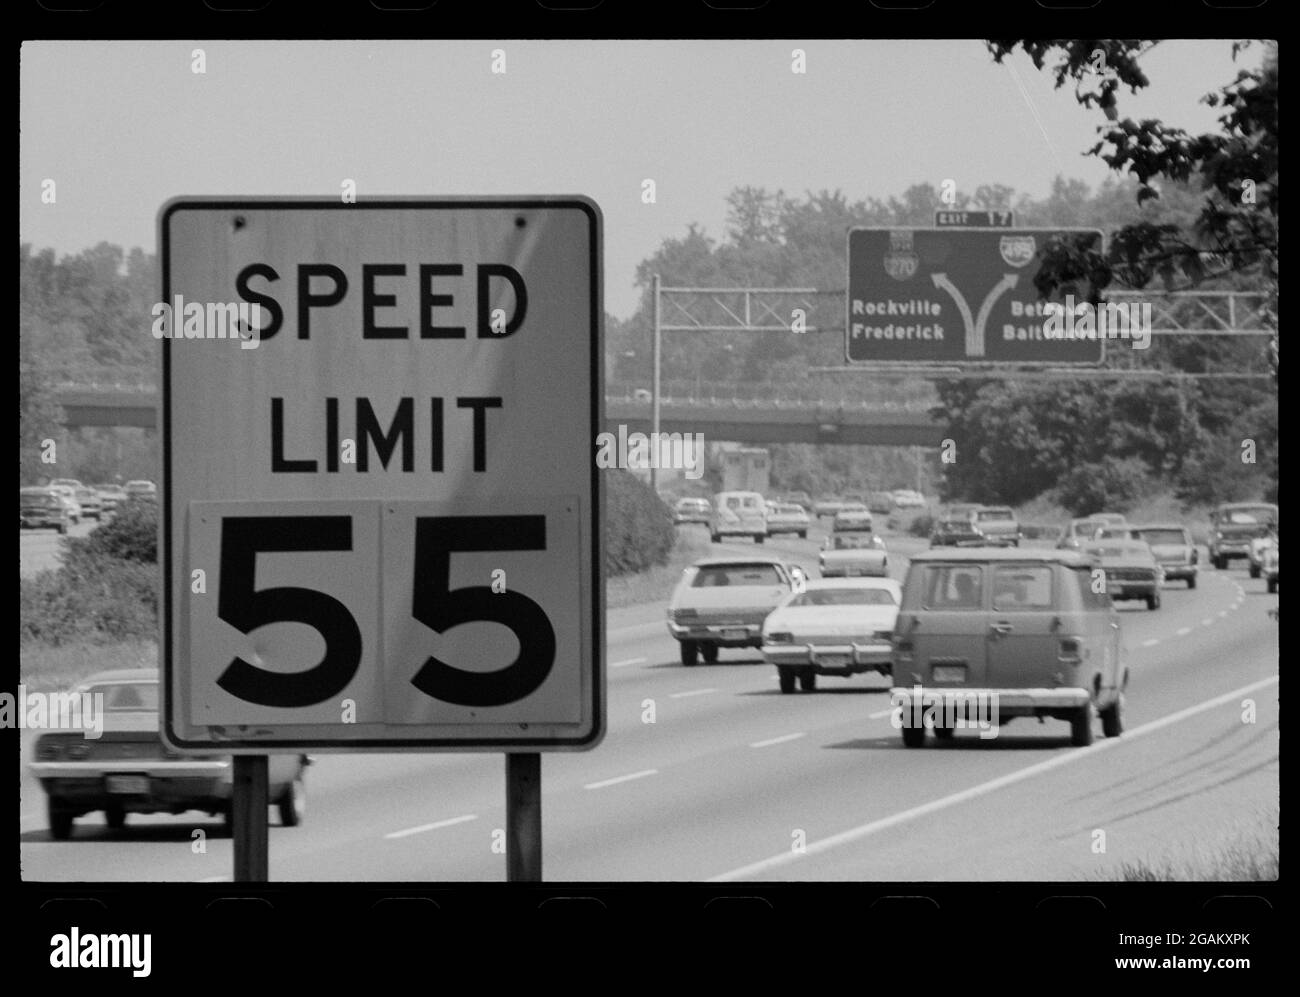 Die nationale Höchstgeschwindigkeit von 55 mph, wie hier auf dem Washington Beltway veröffentlicht, wurde von der Bundesregierung der Vereinigten Staaten im Jahr 1974 als Reaktion auf die Ölkrise von 1973, Bethesda, MD, 5/27/1977, erlassen. (Foto von Warren K Leffler/US News & World Report Collection/RBM Vintage Images) Stockfoto